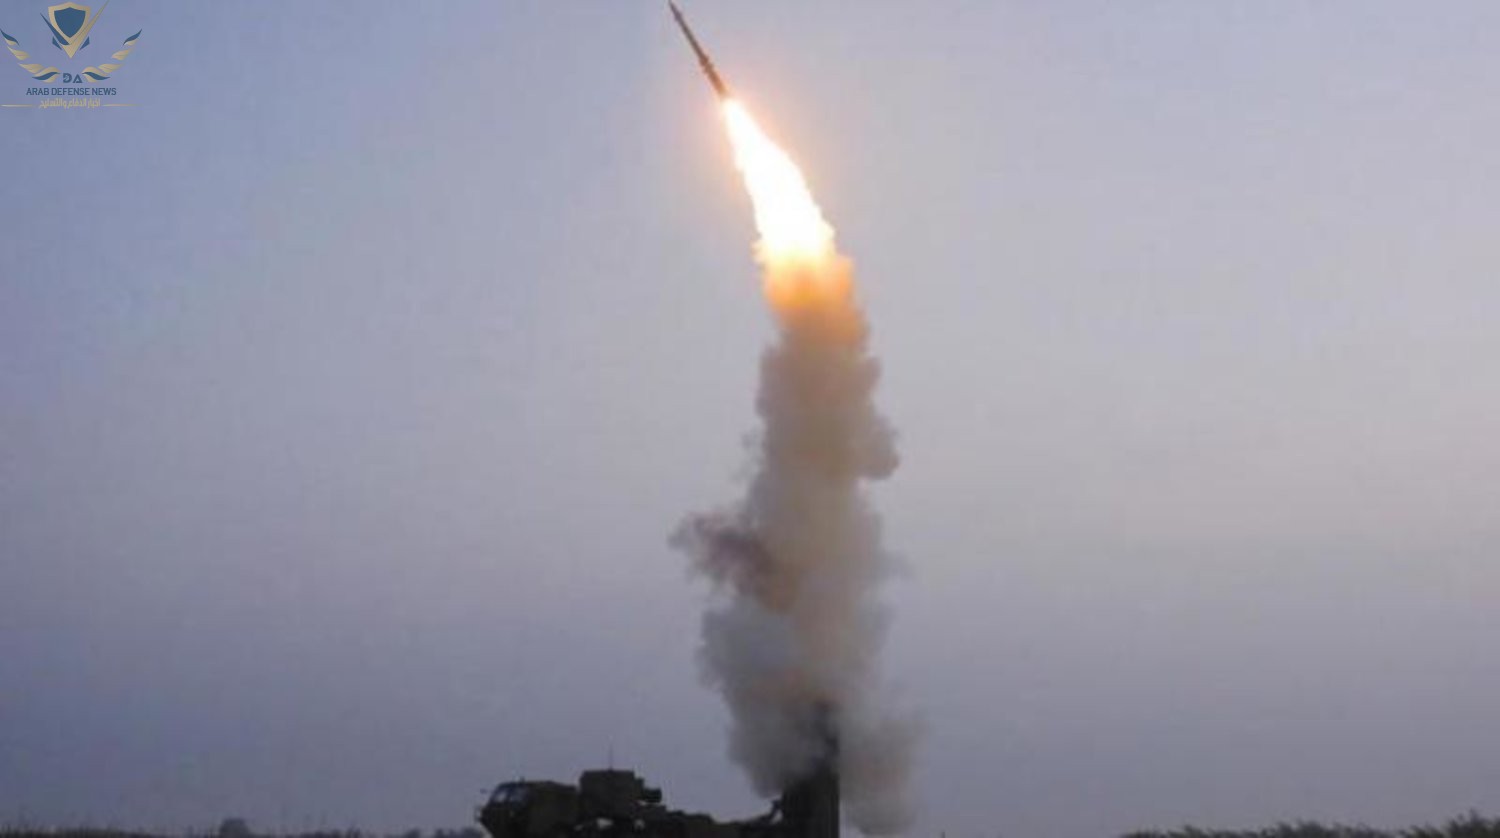 أمريكا تطورصاروخ تفوق سرعته سرعة الصوت لصالح البحرية لمواجهة الصين